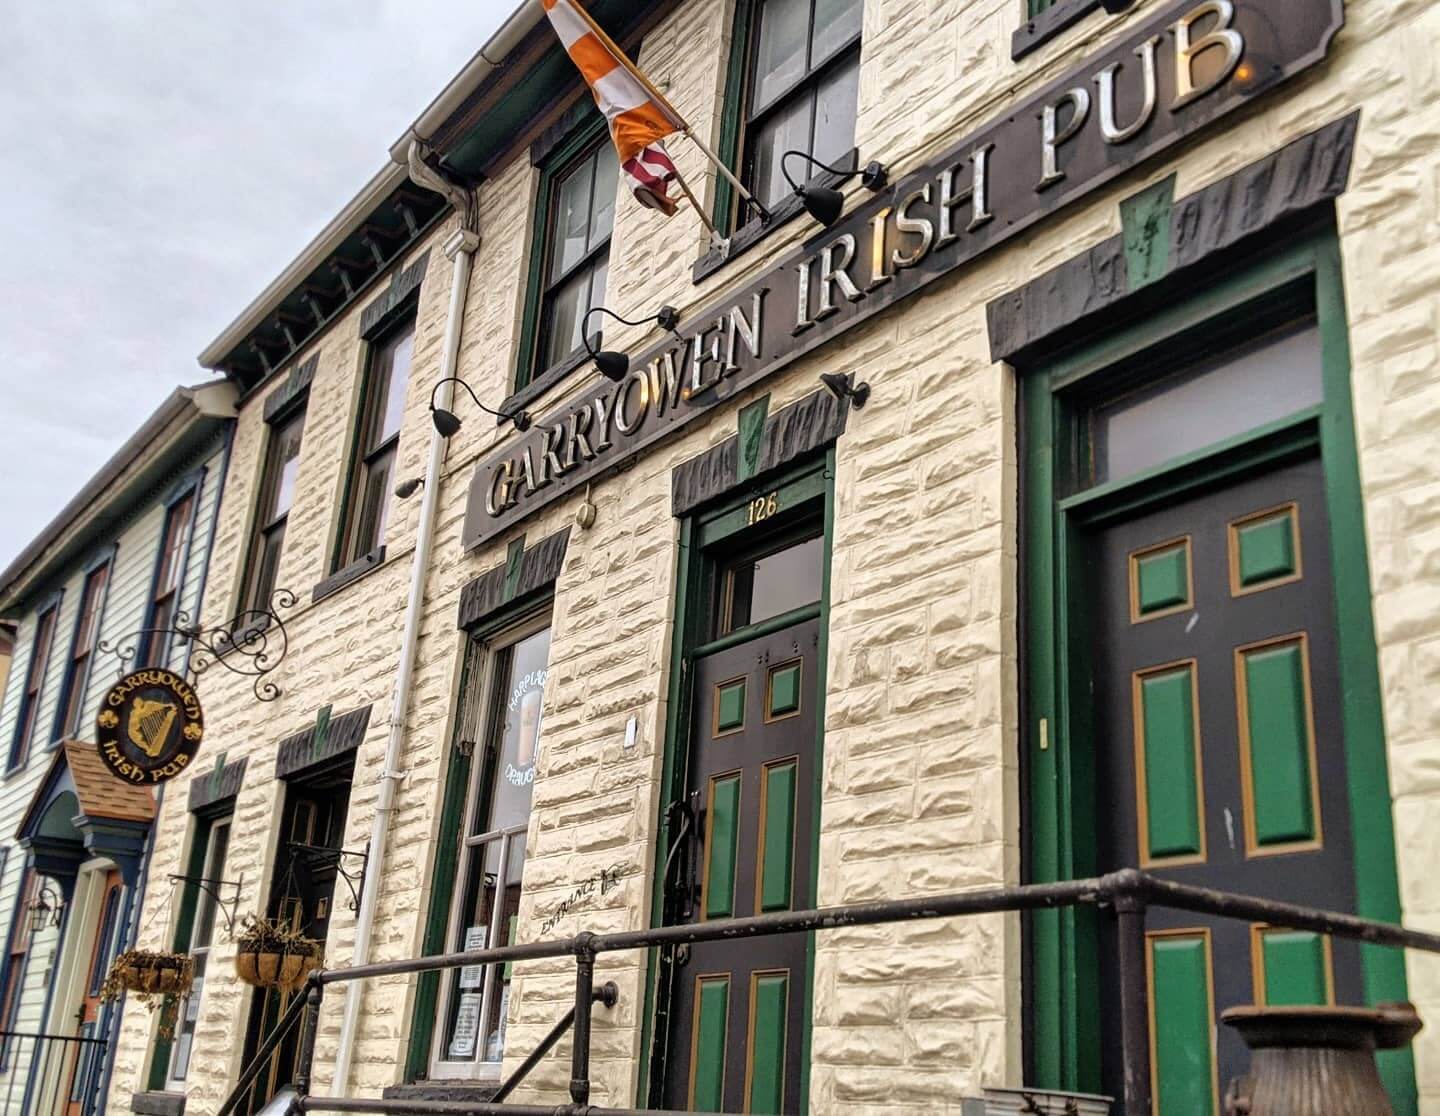 Garryowen irish pub gettysburg